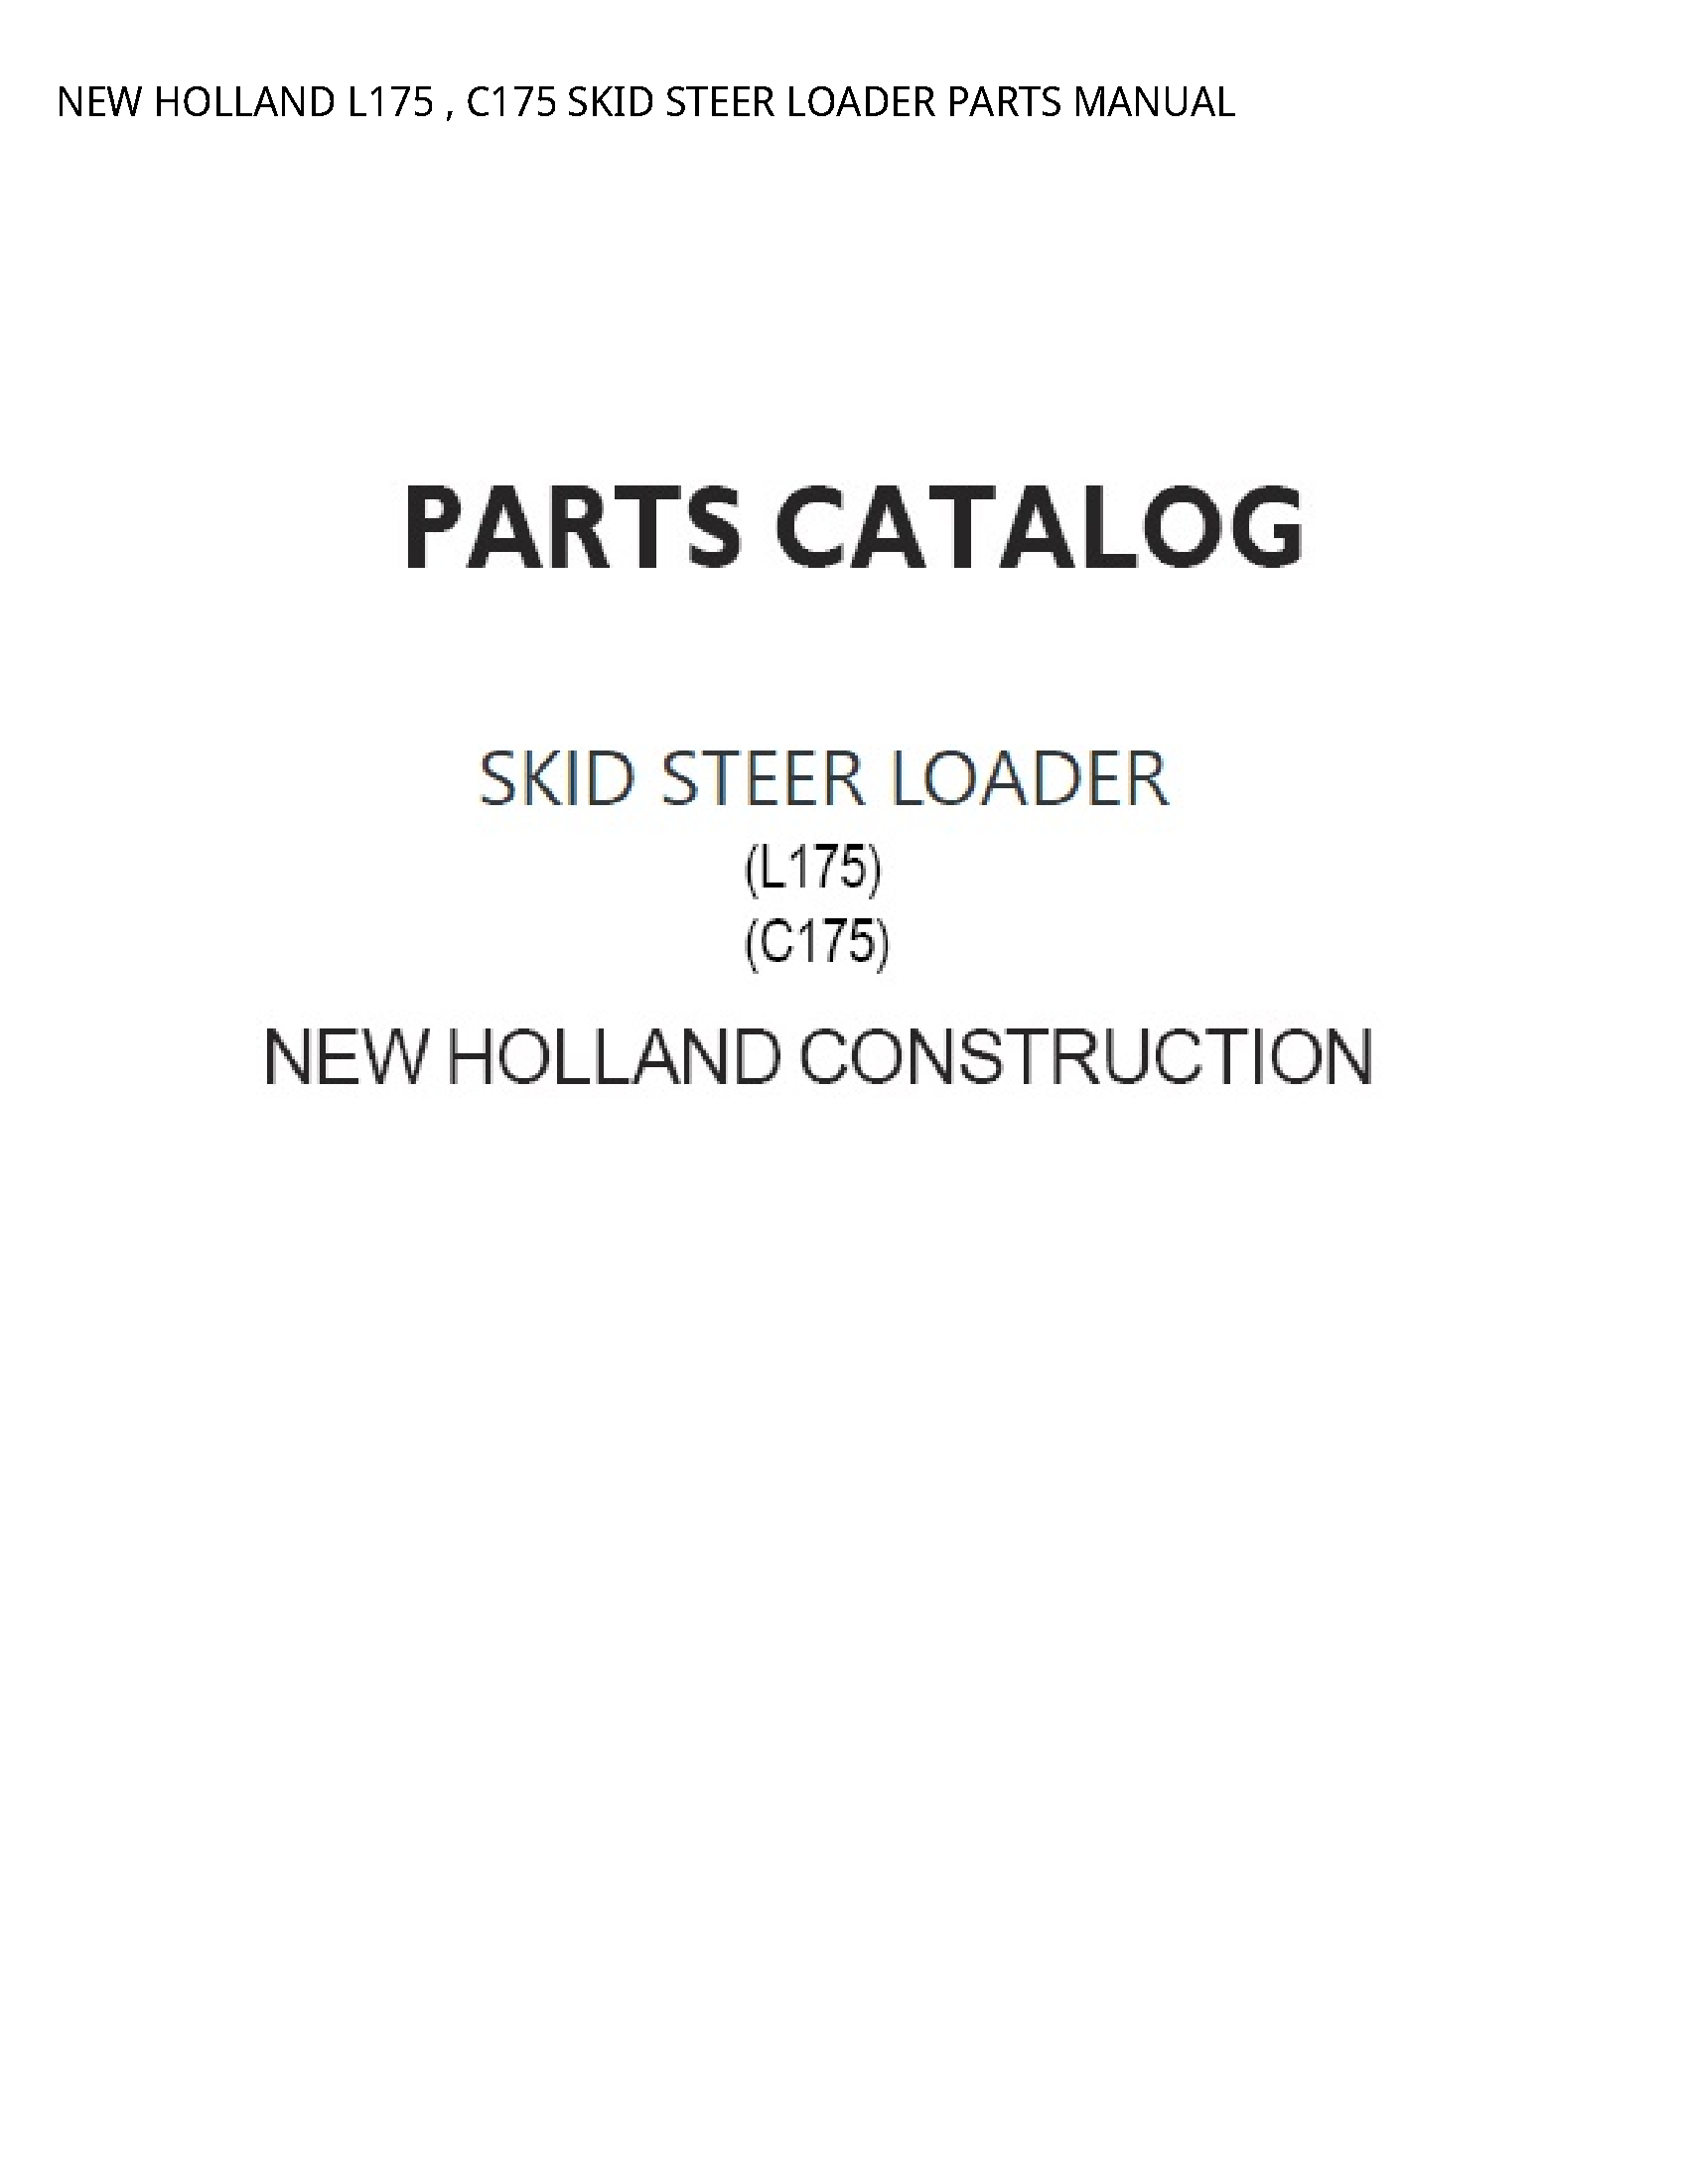 New Holland L175 SKID STEER LOADER PARTS manual